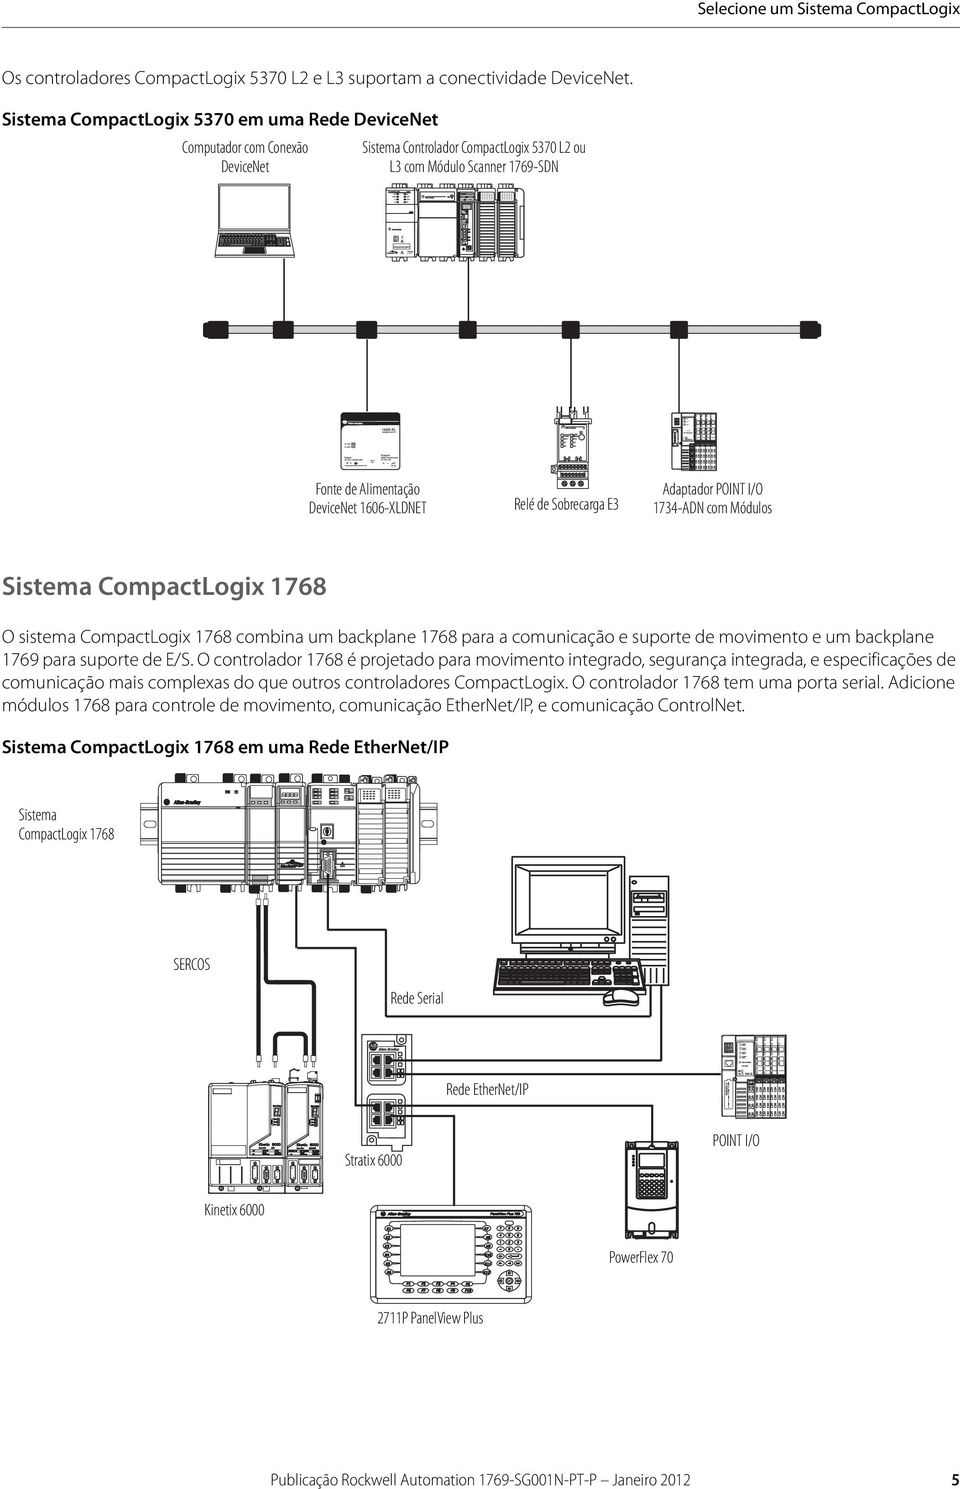 Sistema CompactLogix 5370 em uma Rede DeviceNet Computador com Conexão DeviceNet Sistema Controlador CompactLogix 5370 L2 ou L3 com Módulo Scanner 1769-SDN Fonte de Alimentação DeviceNet 1606-XLDNET